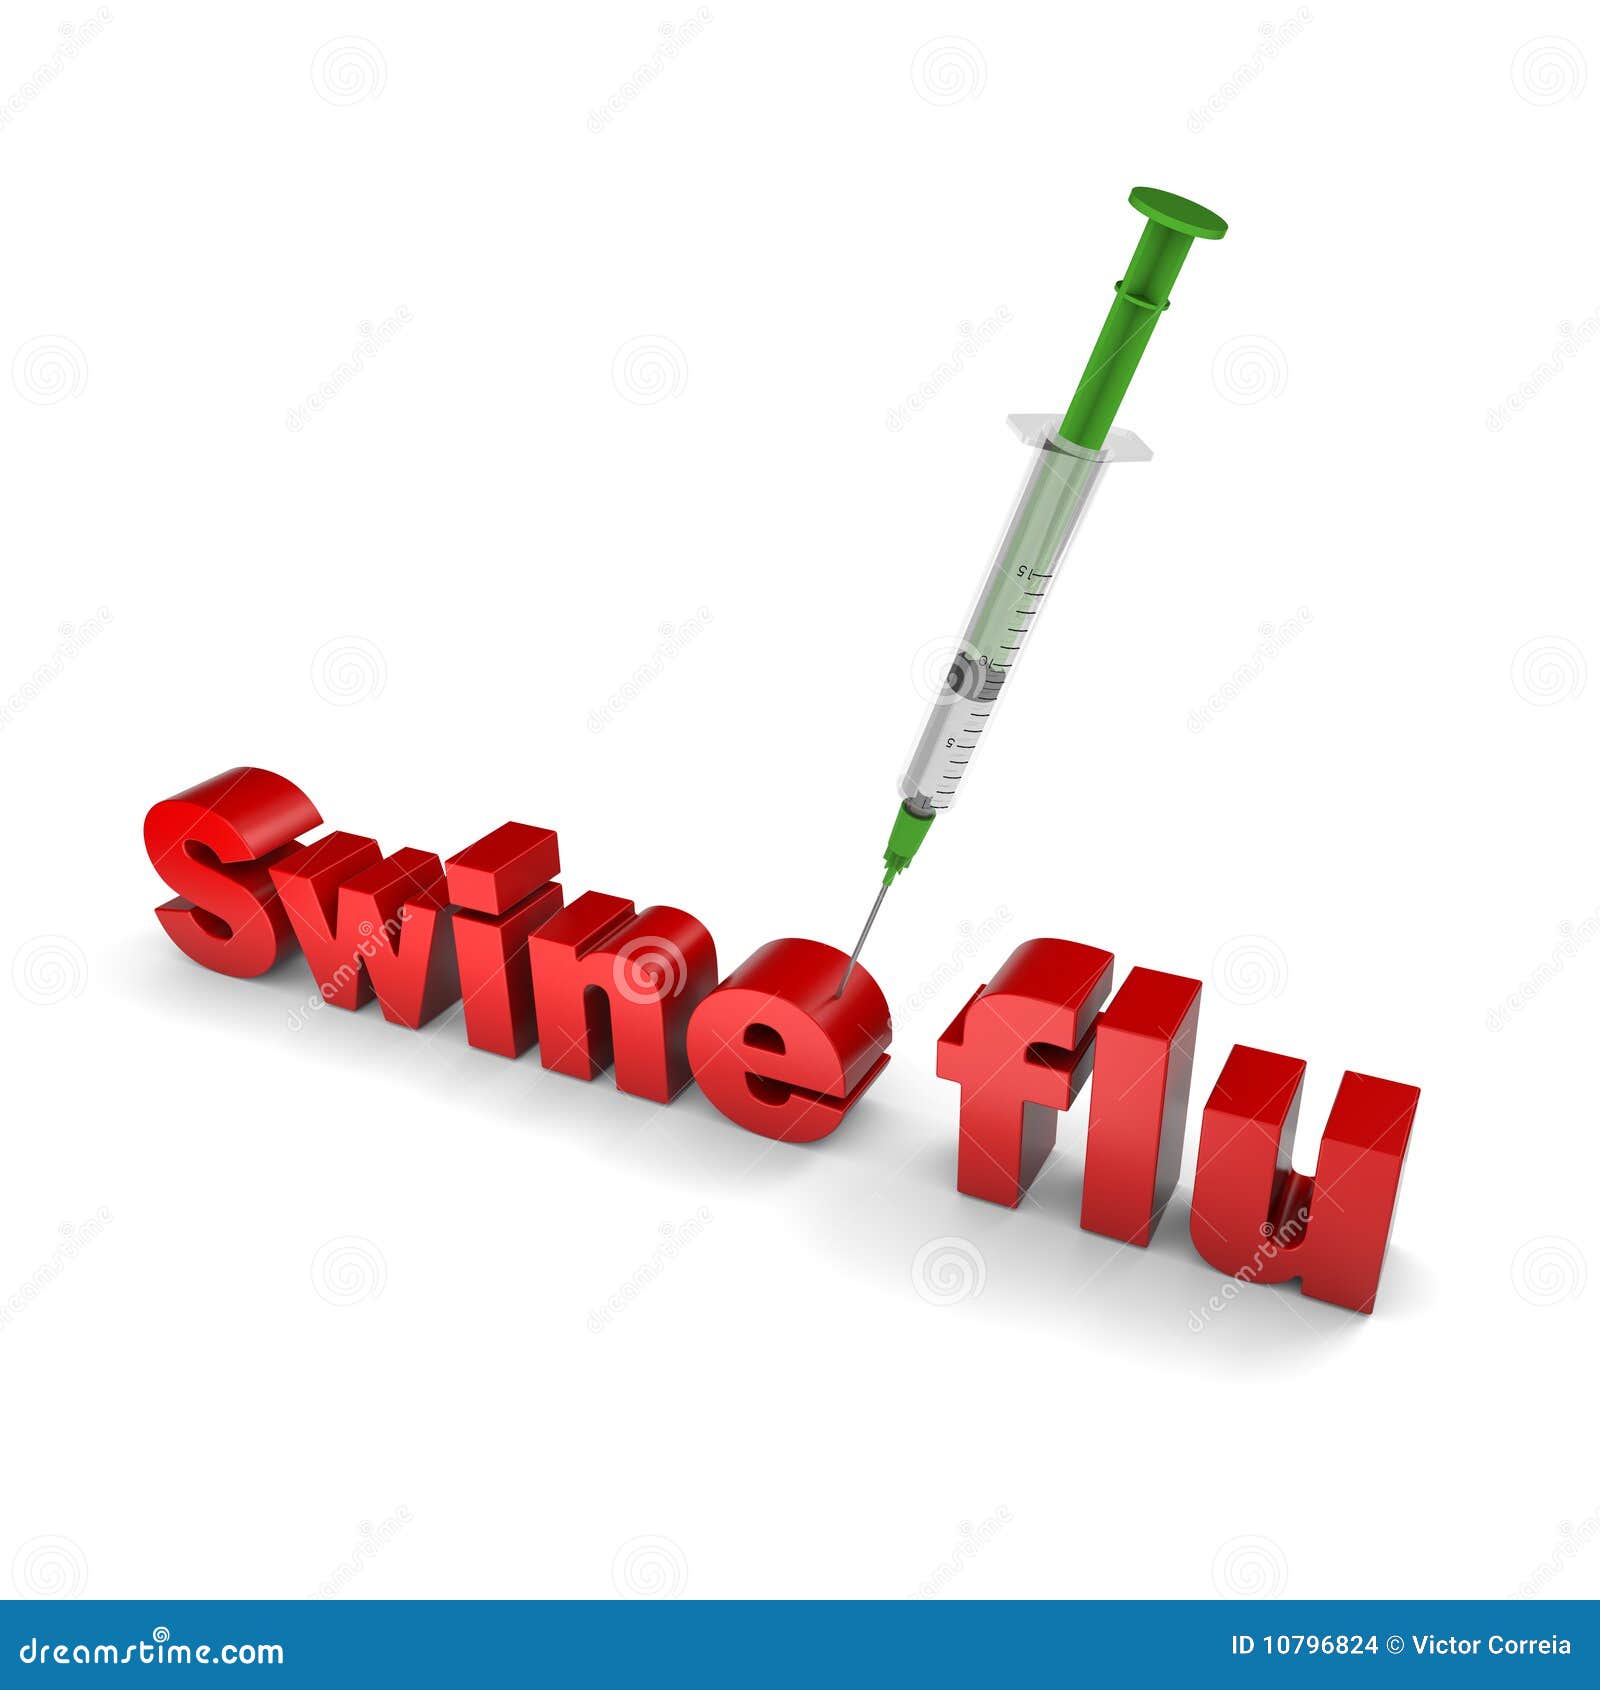 Curación para la gripe de los cerdos. Texto de la gripe de los cerdos que es inyectado por una jeringuilla. Vacuna del virus H1N1. Parte de una serie.